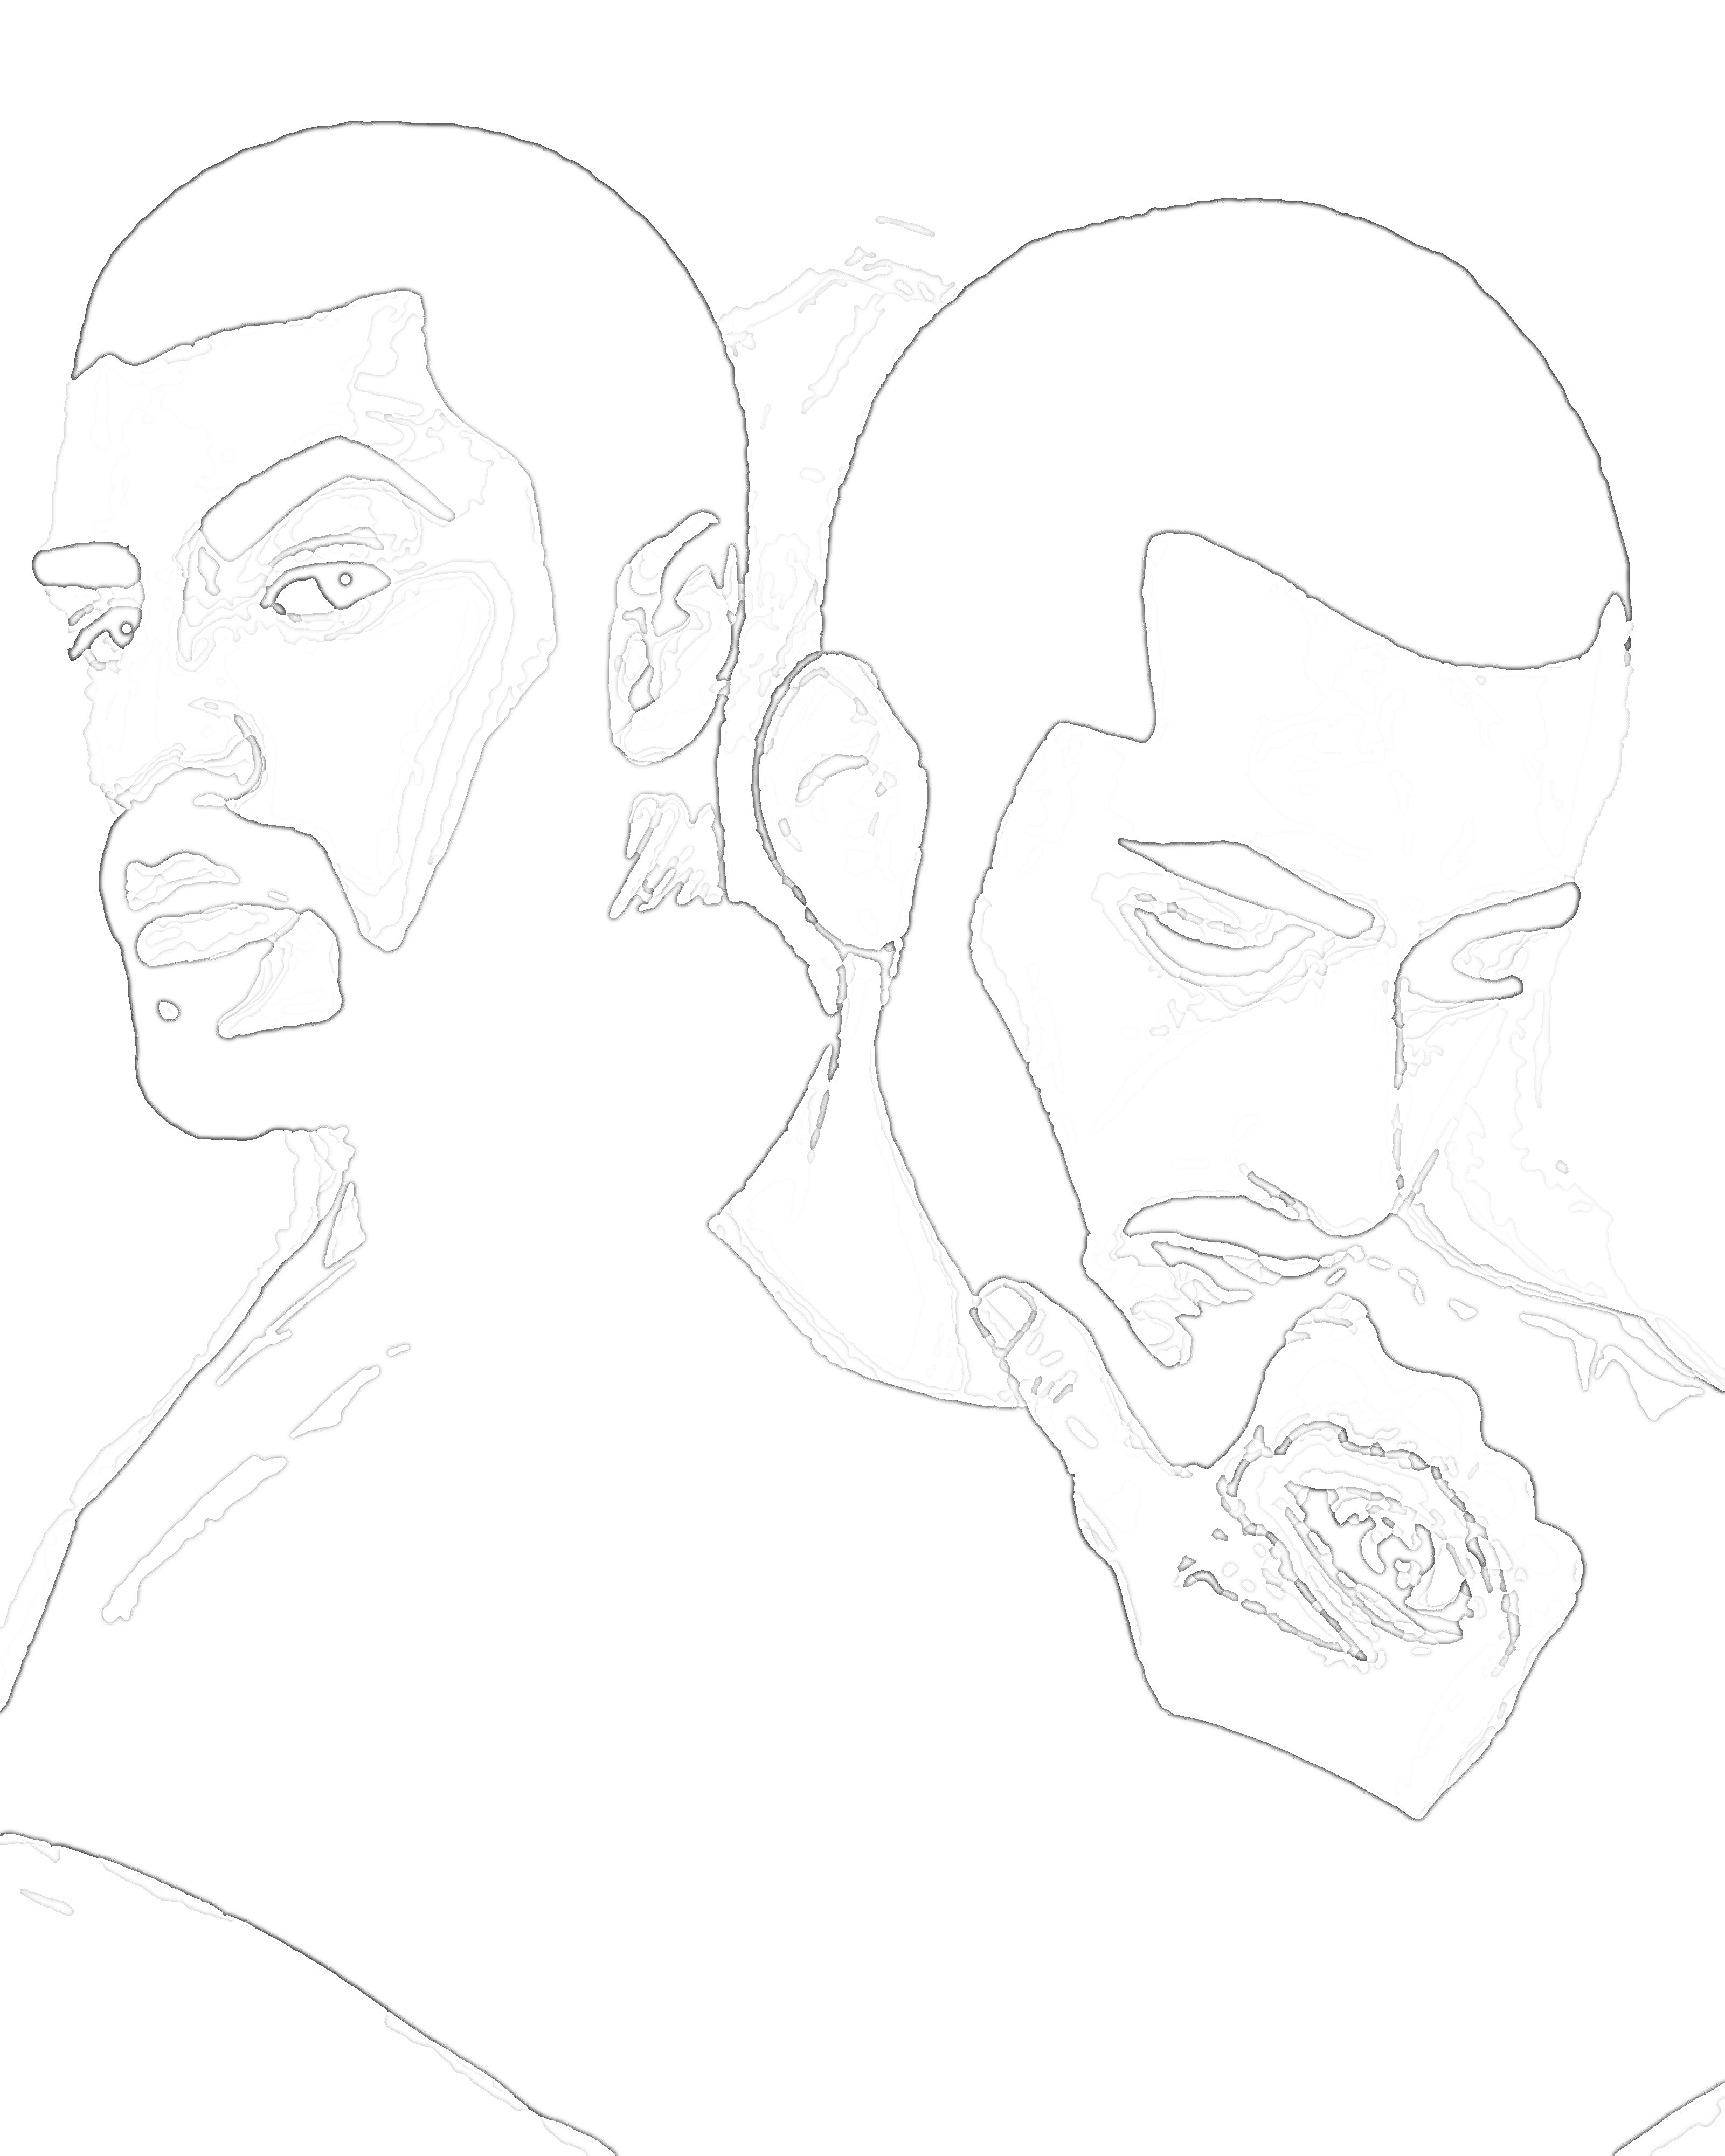 Раскраска Раскраска по номерам - Портреты двух мужчин с бородами и короткими волосами, один смотрит в камеру, другой вниз, держась за подбородок с рисунком глаза на руке